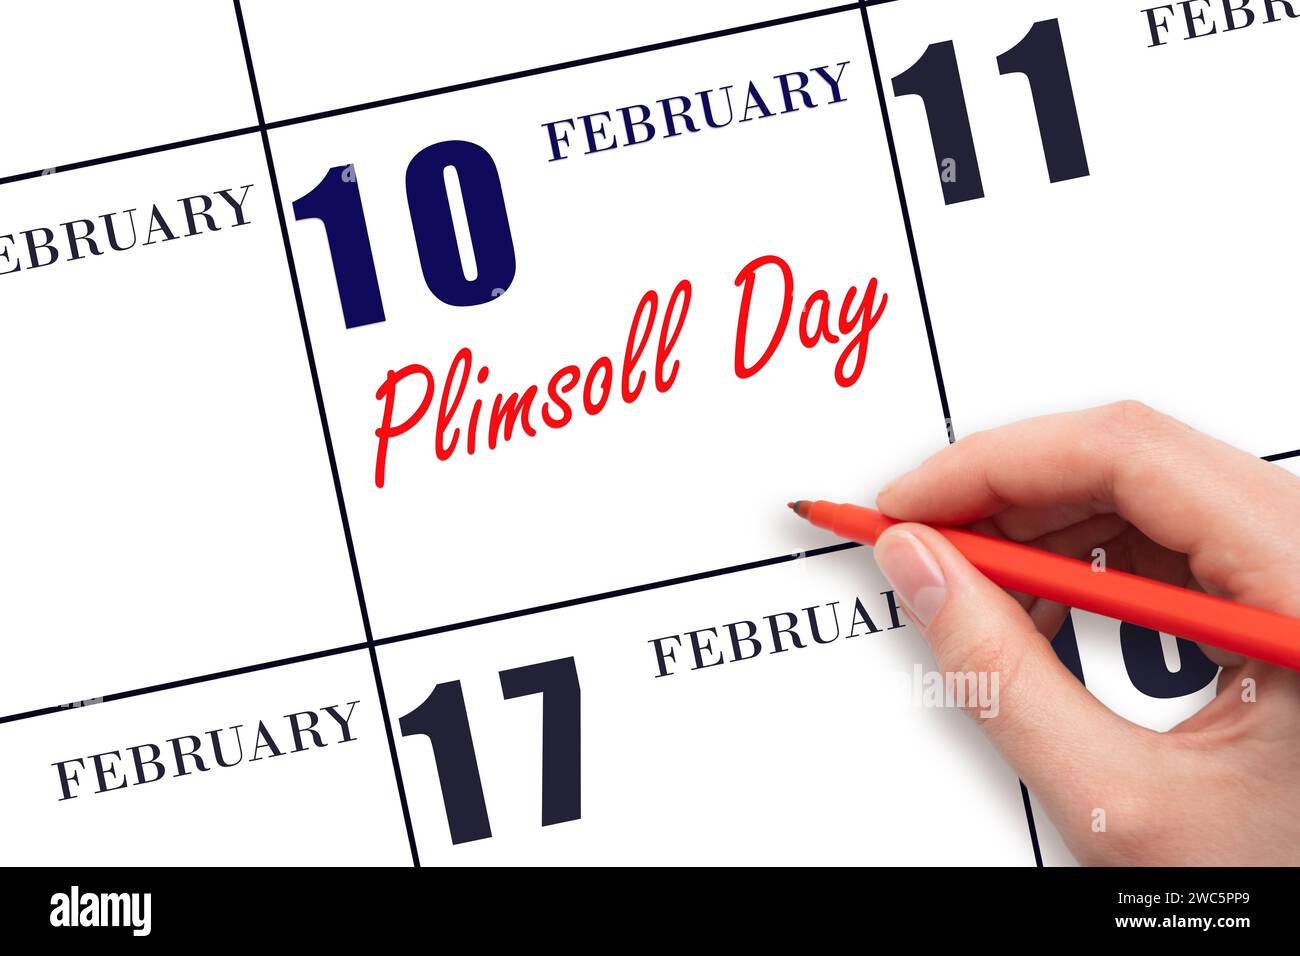 Februar: Text per Hand schreiben: Plimsoll Day am Kalenderdatum. Speichern Sie das Datum. Urlaub. Tag des Jahres-Konzept. Stockfoto